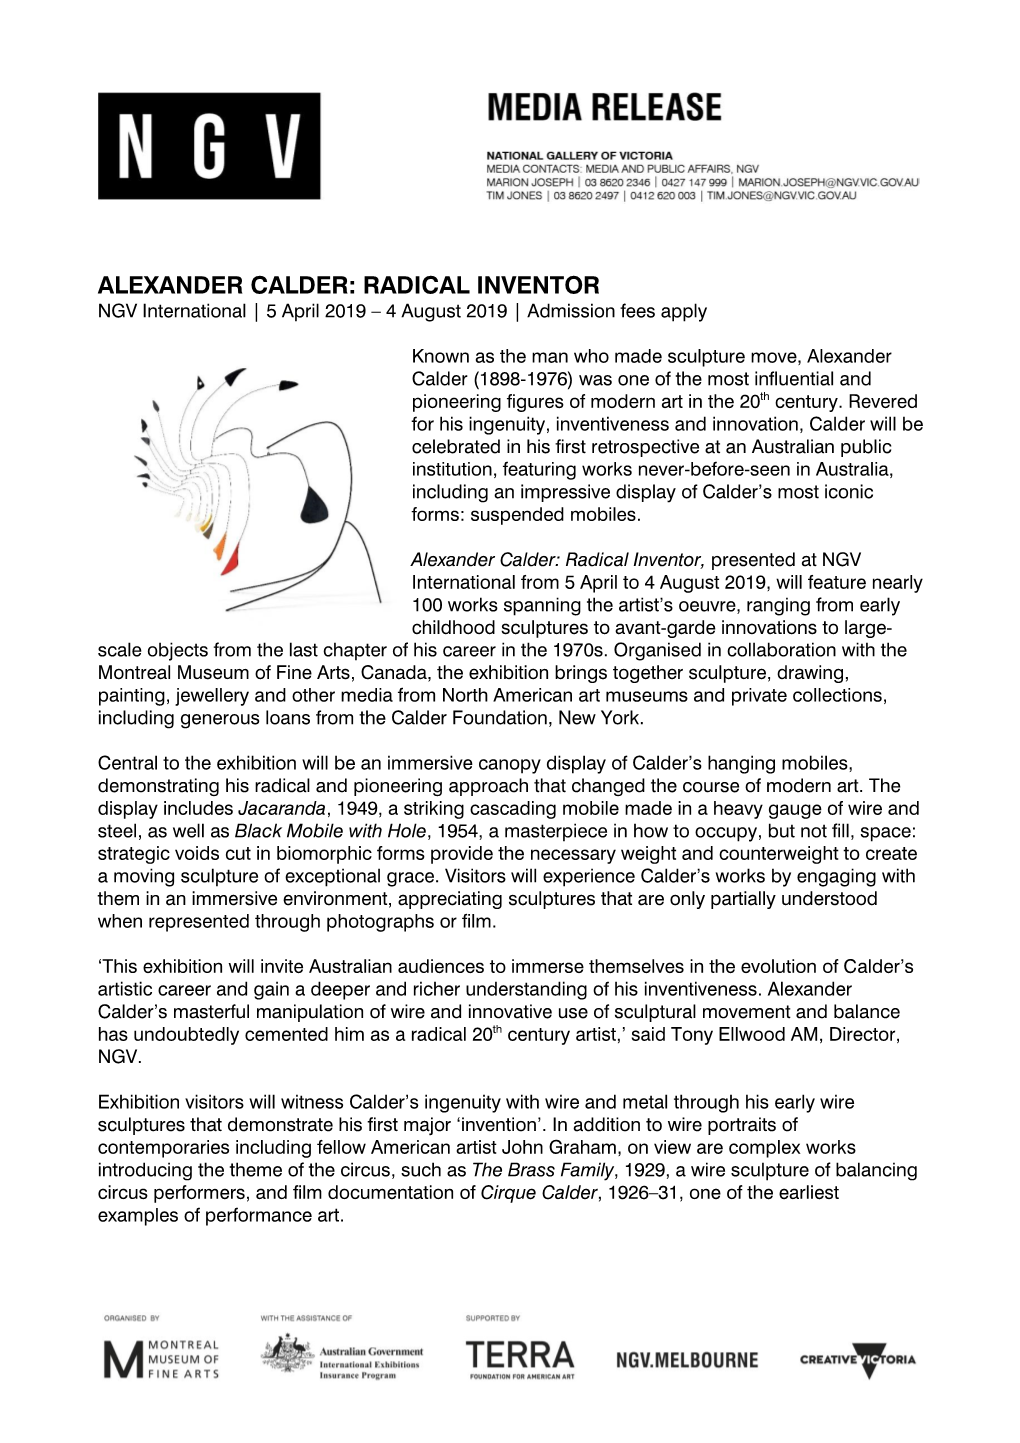 ALEXANDER CALDER: RADICAL INVENTOR NGV International | 5 April 2019 – 4 August 2019 | Admission Fees Apply